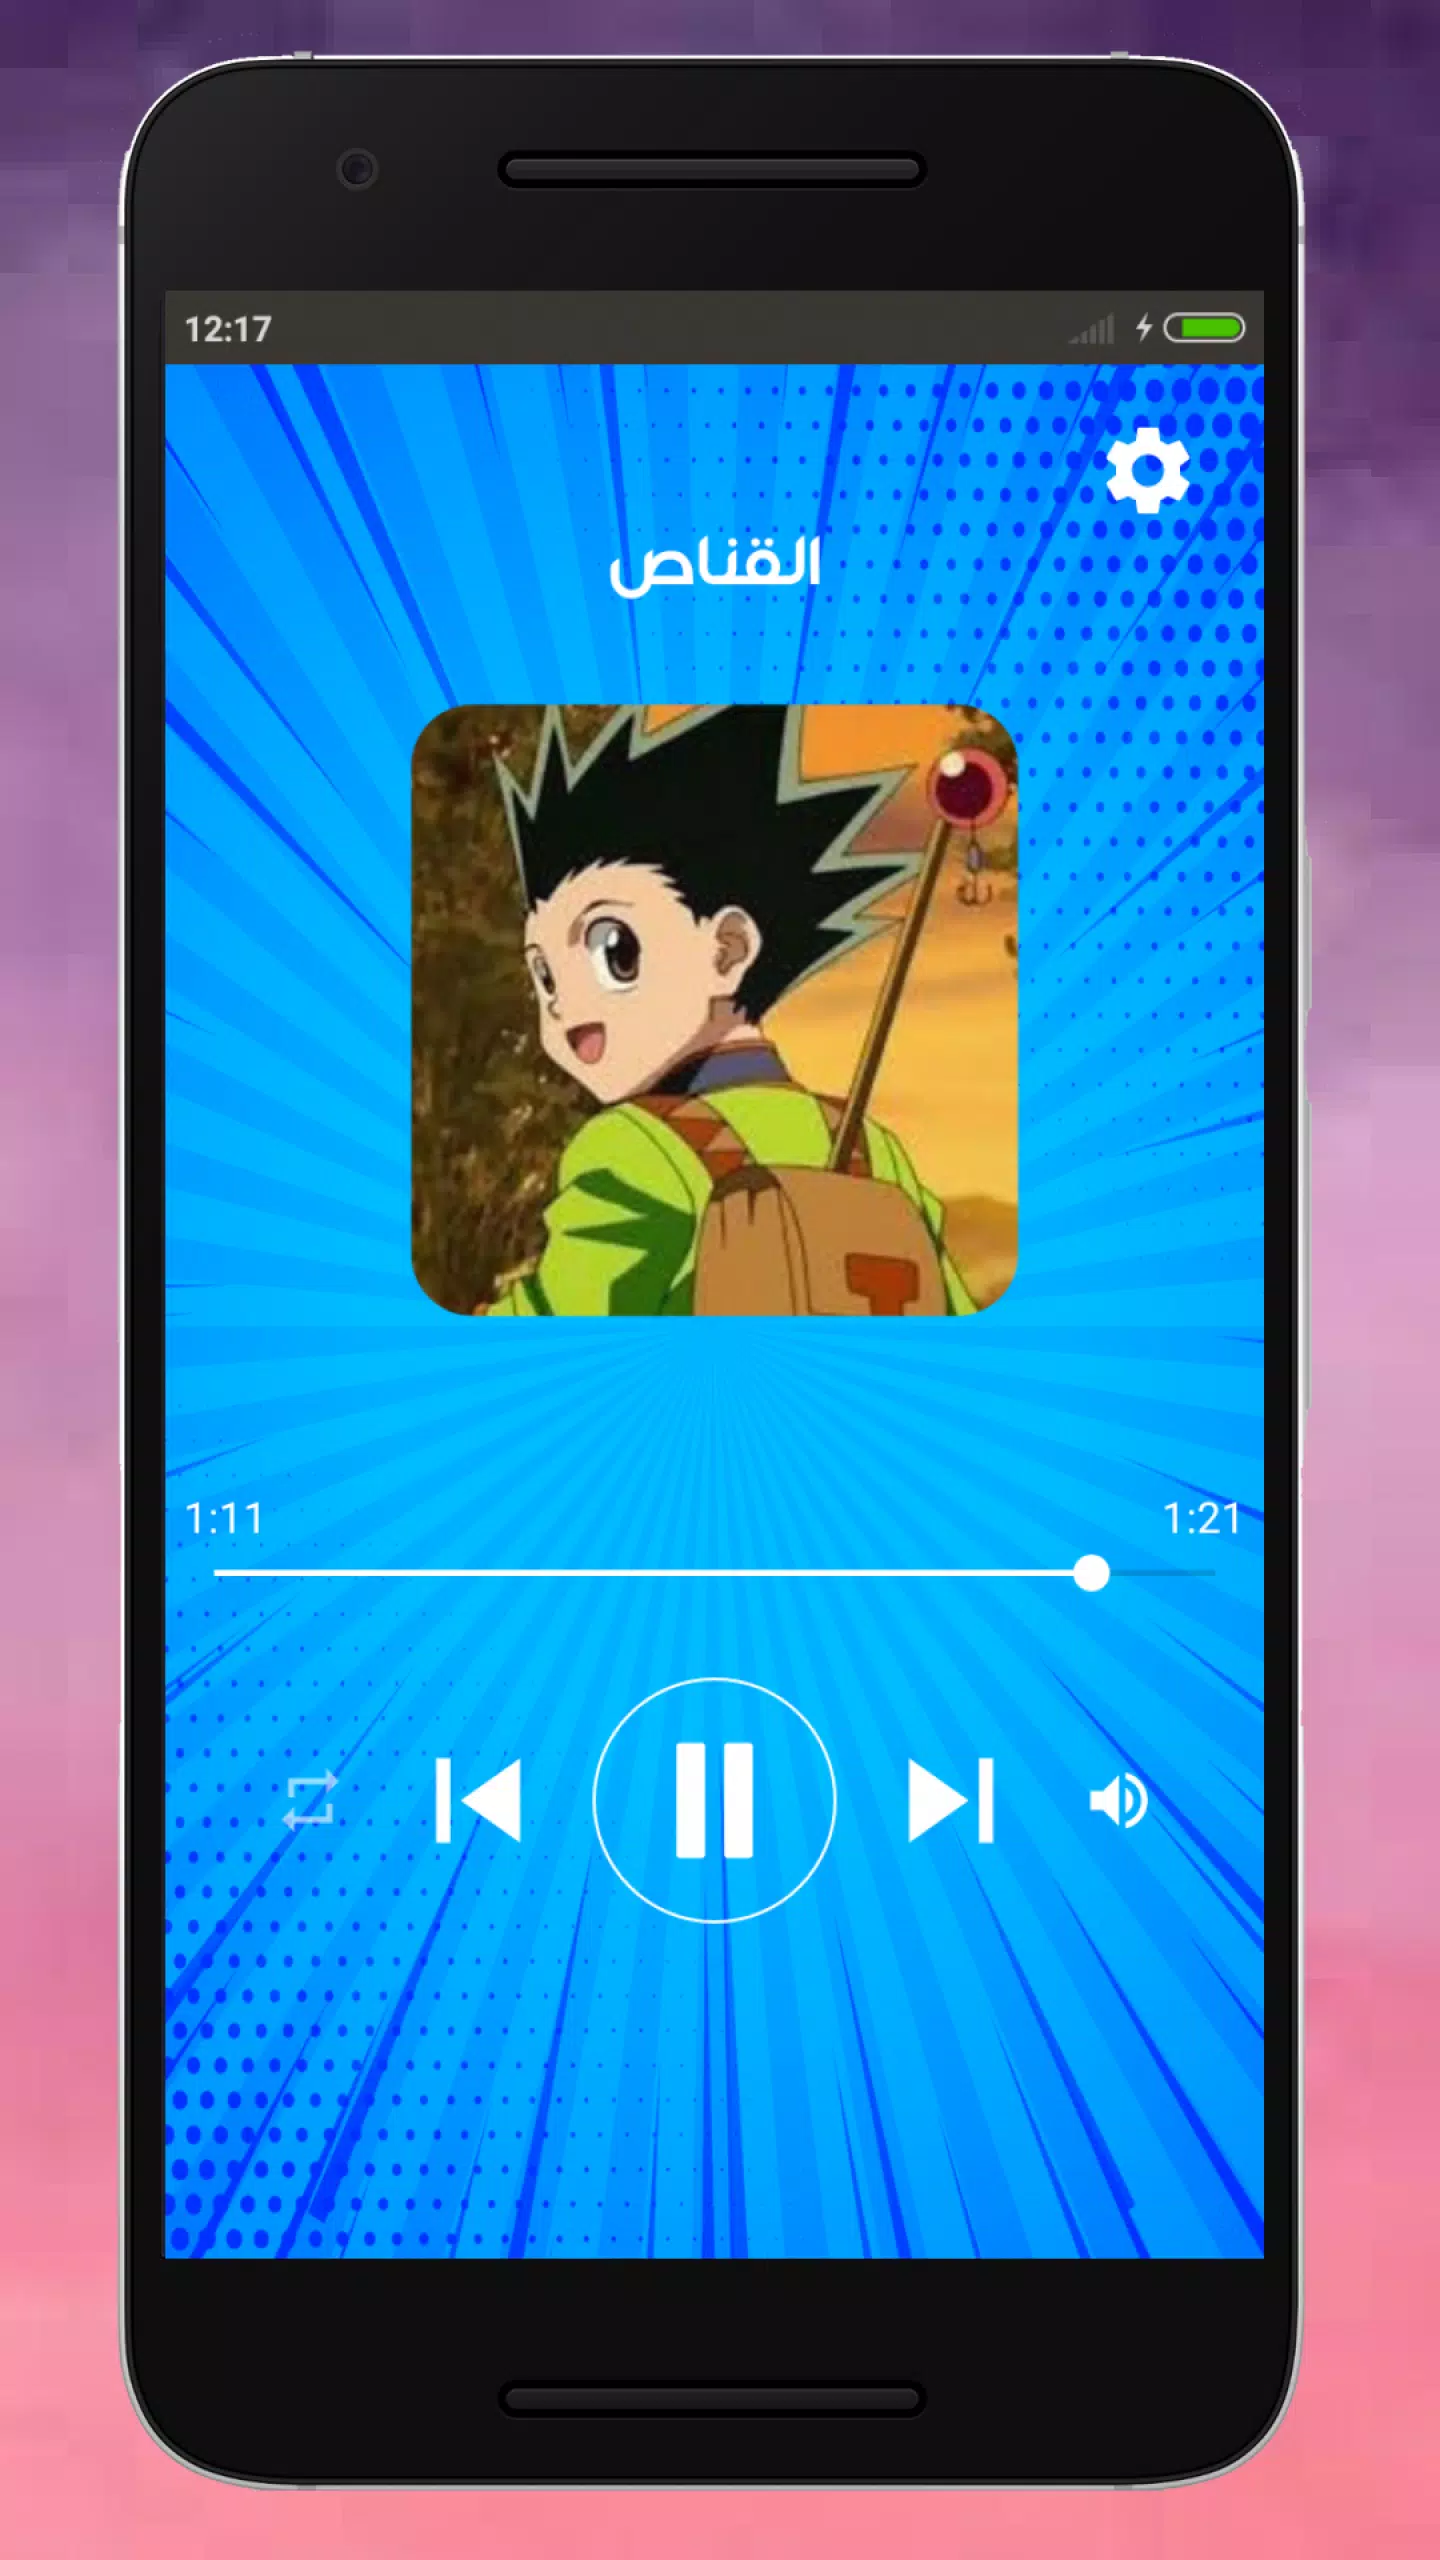 اغاني كرتون سبيس تون APK for Android Download